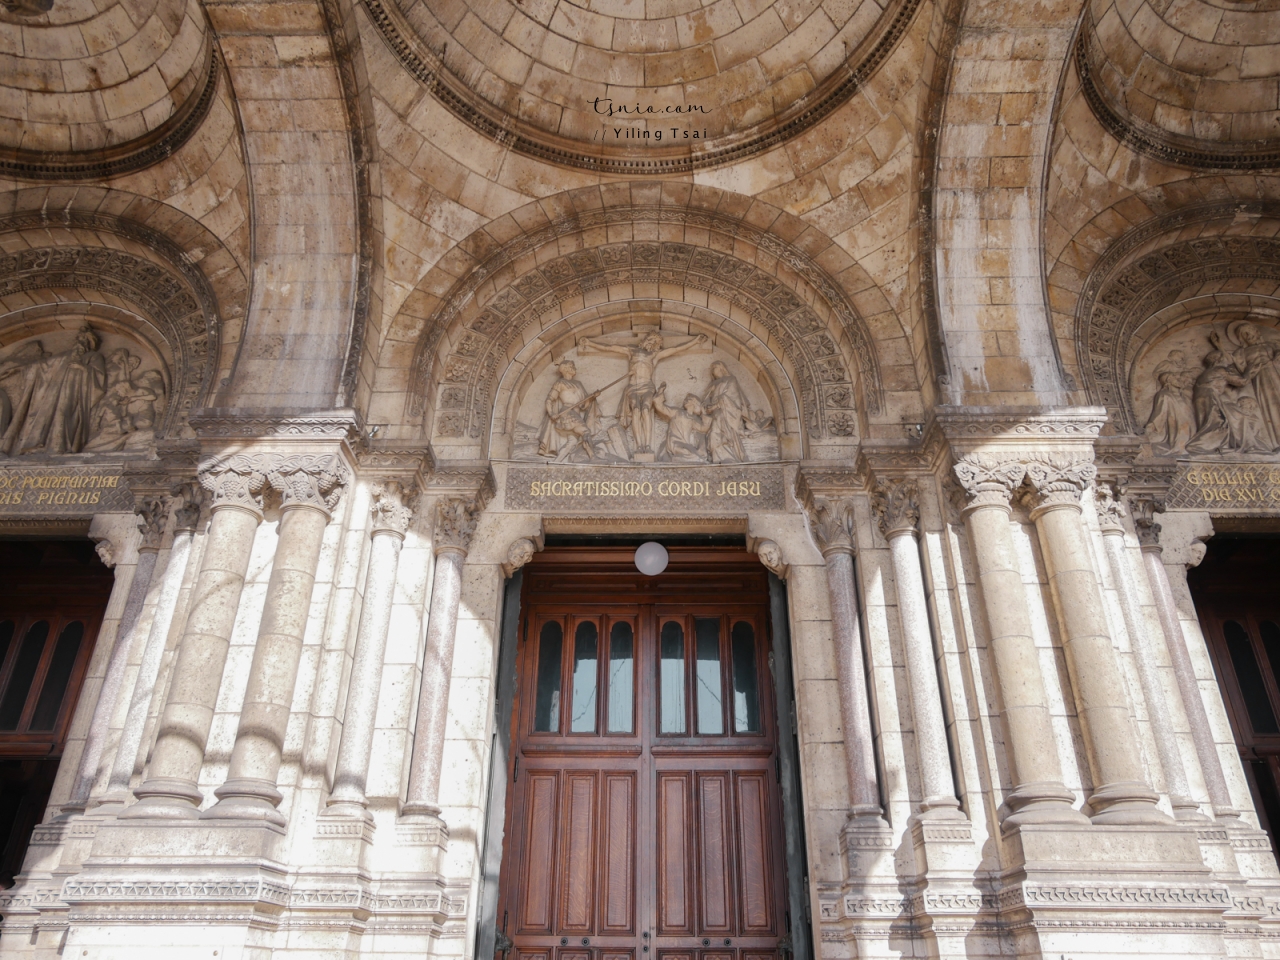 法國巴黎景點 聖心堂 Sacré-Cœur 蒙馬特地標純白教堂